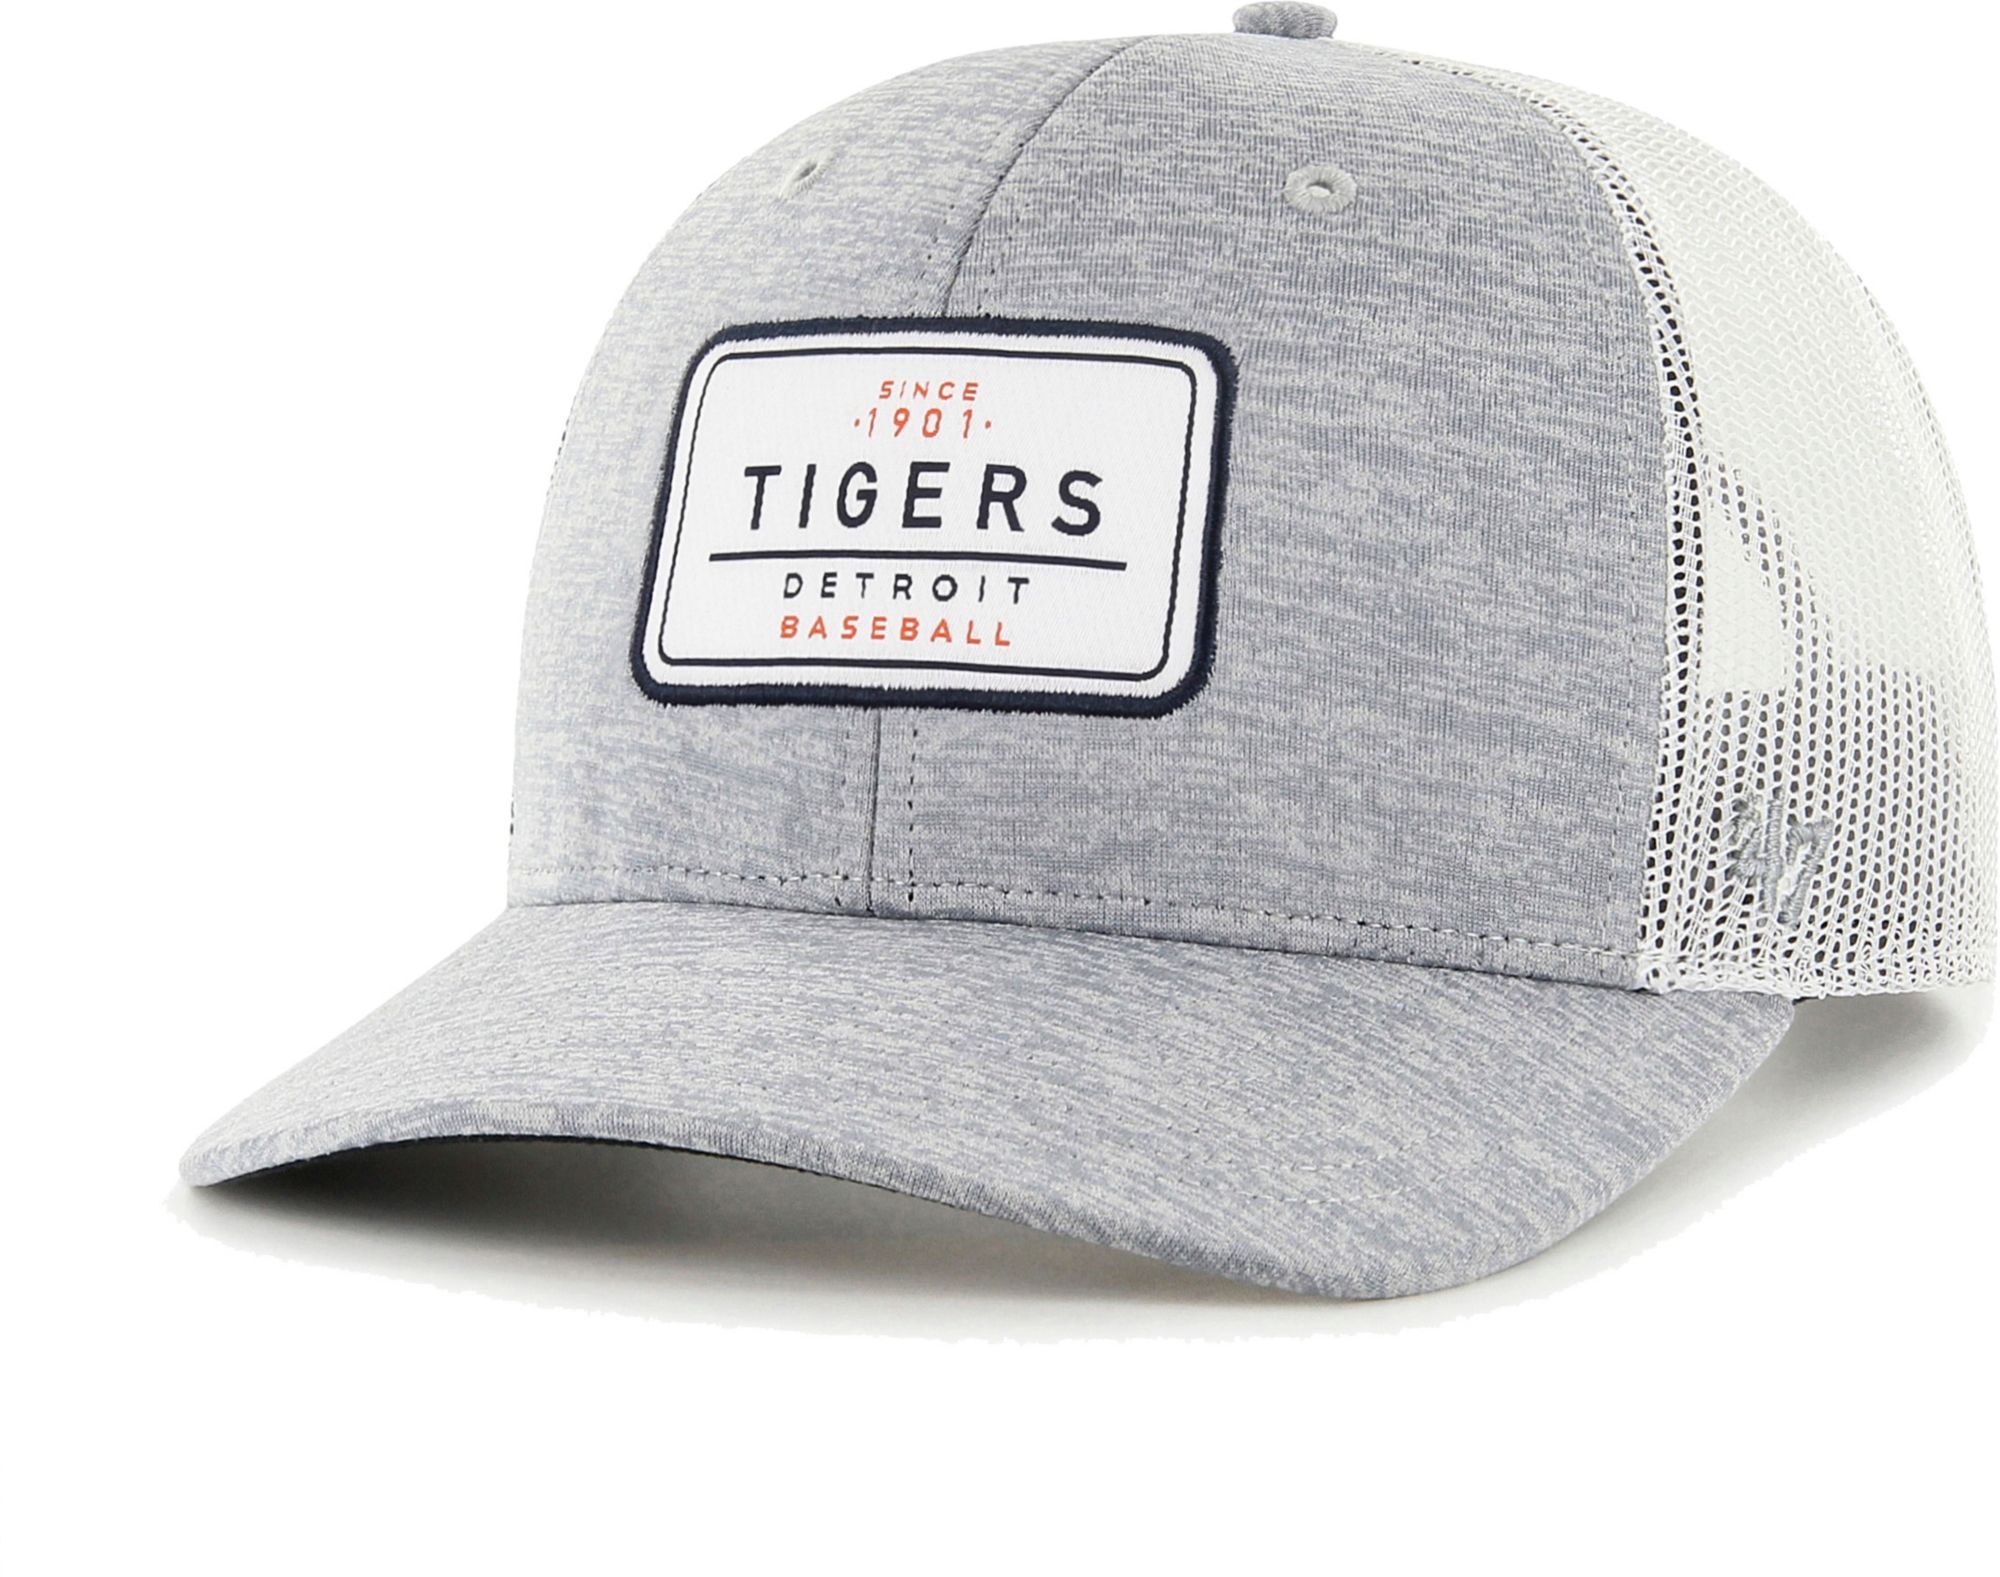 Men's New Era Navy Detroit Tigers Striped Beanie Hat